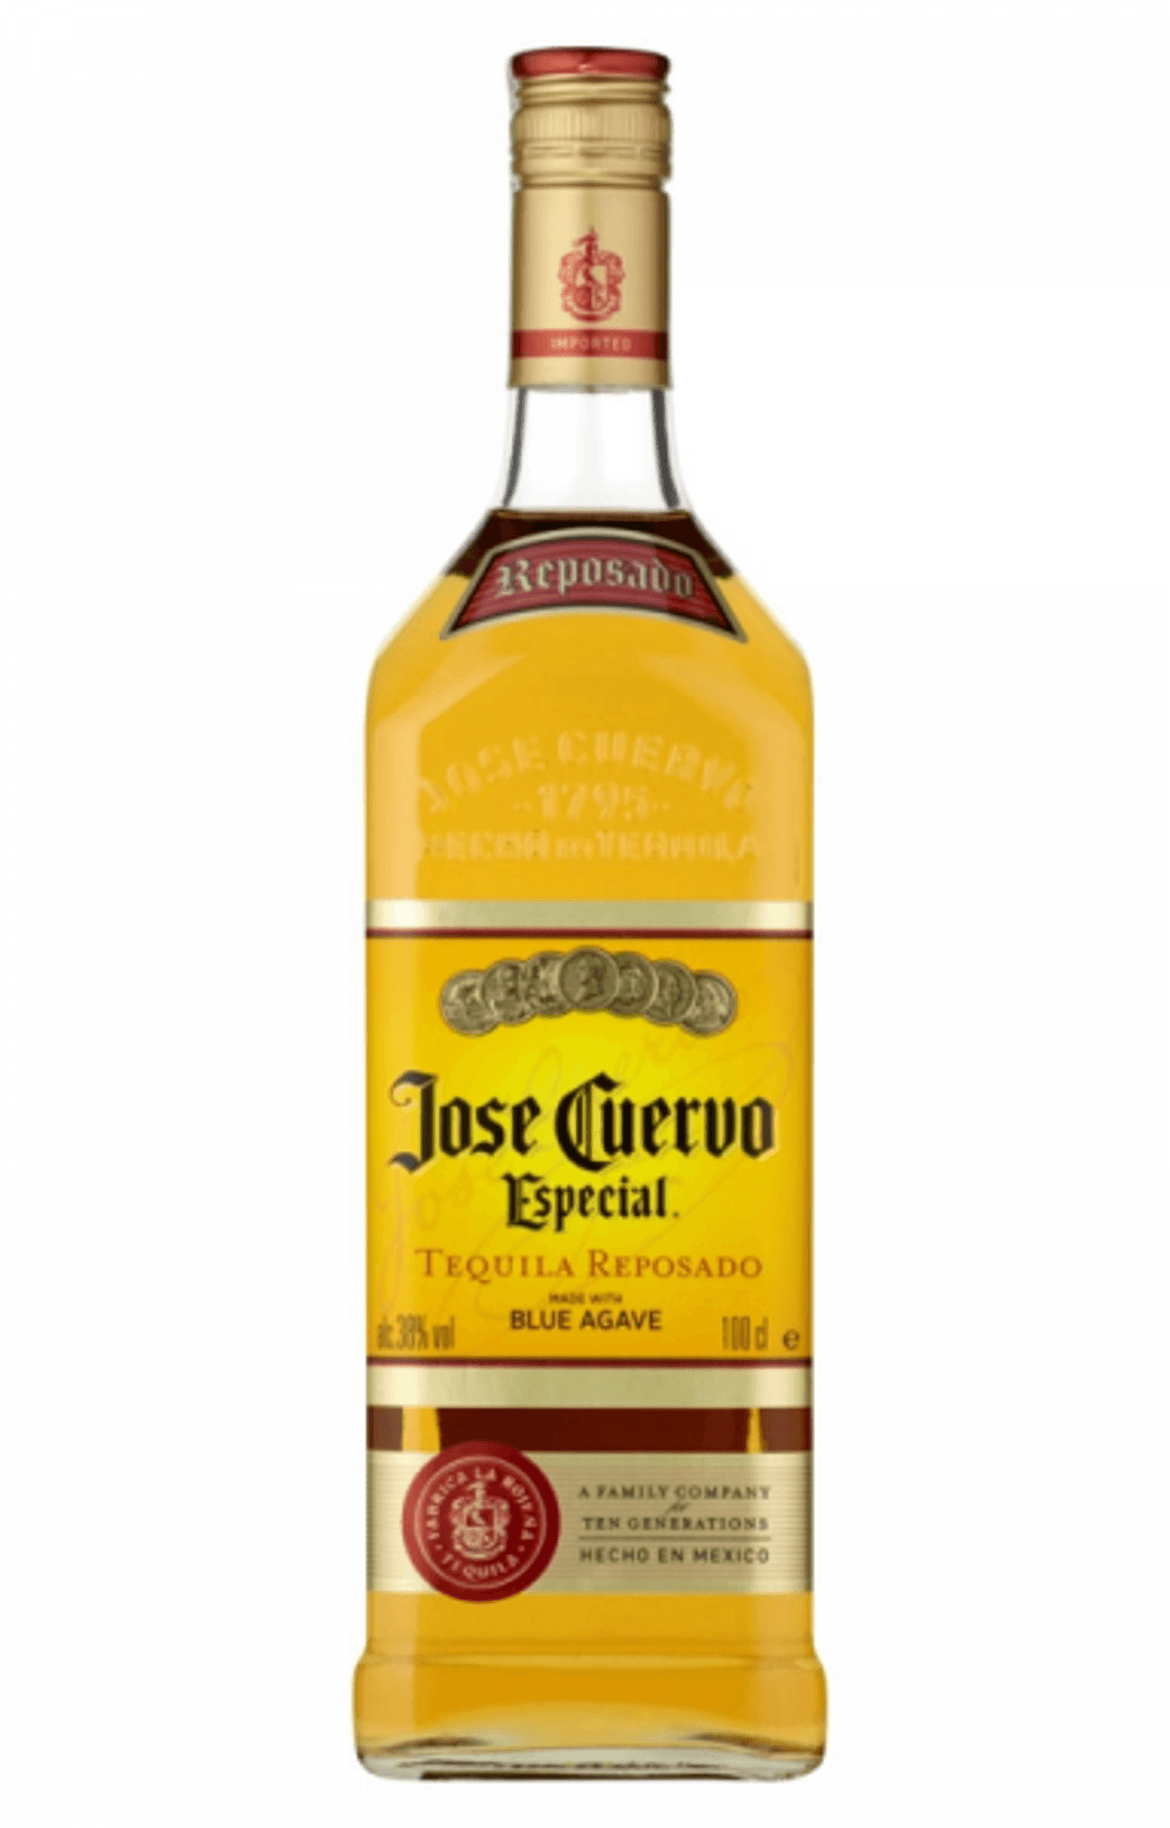 Jose Cuervo Reposado tequila 38%